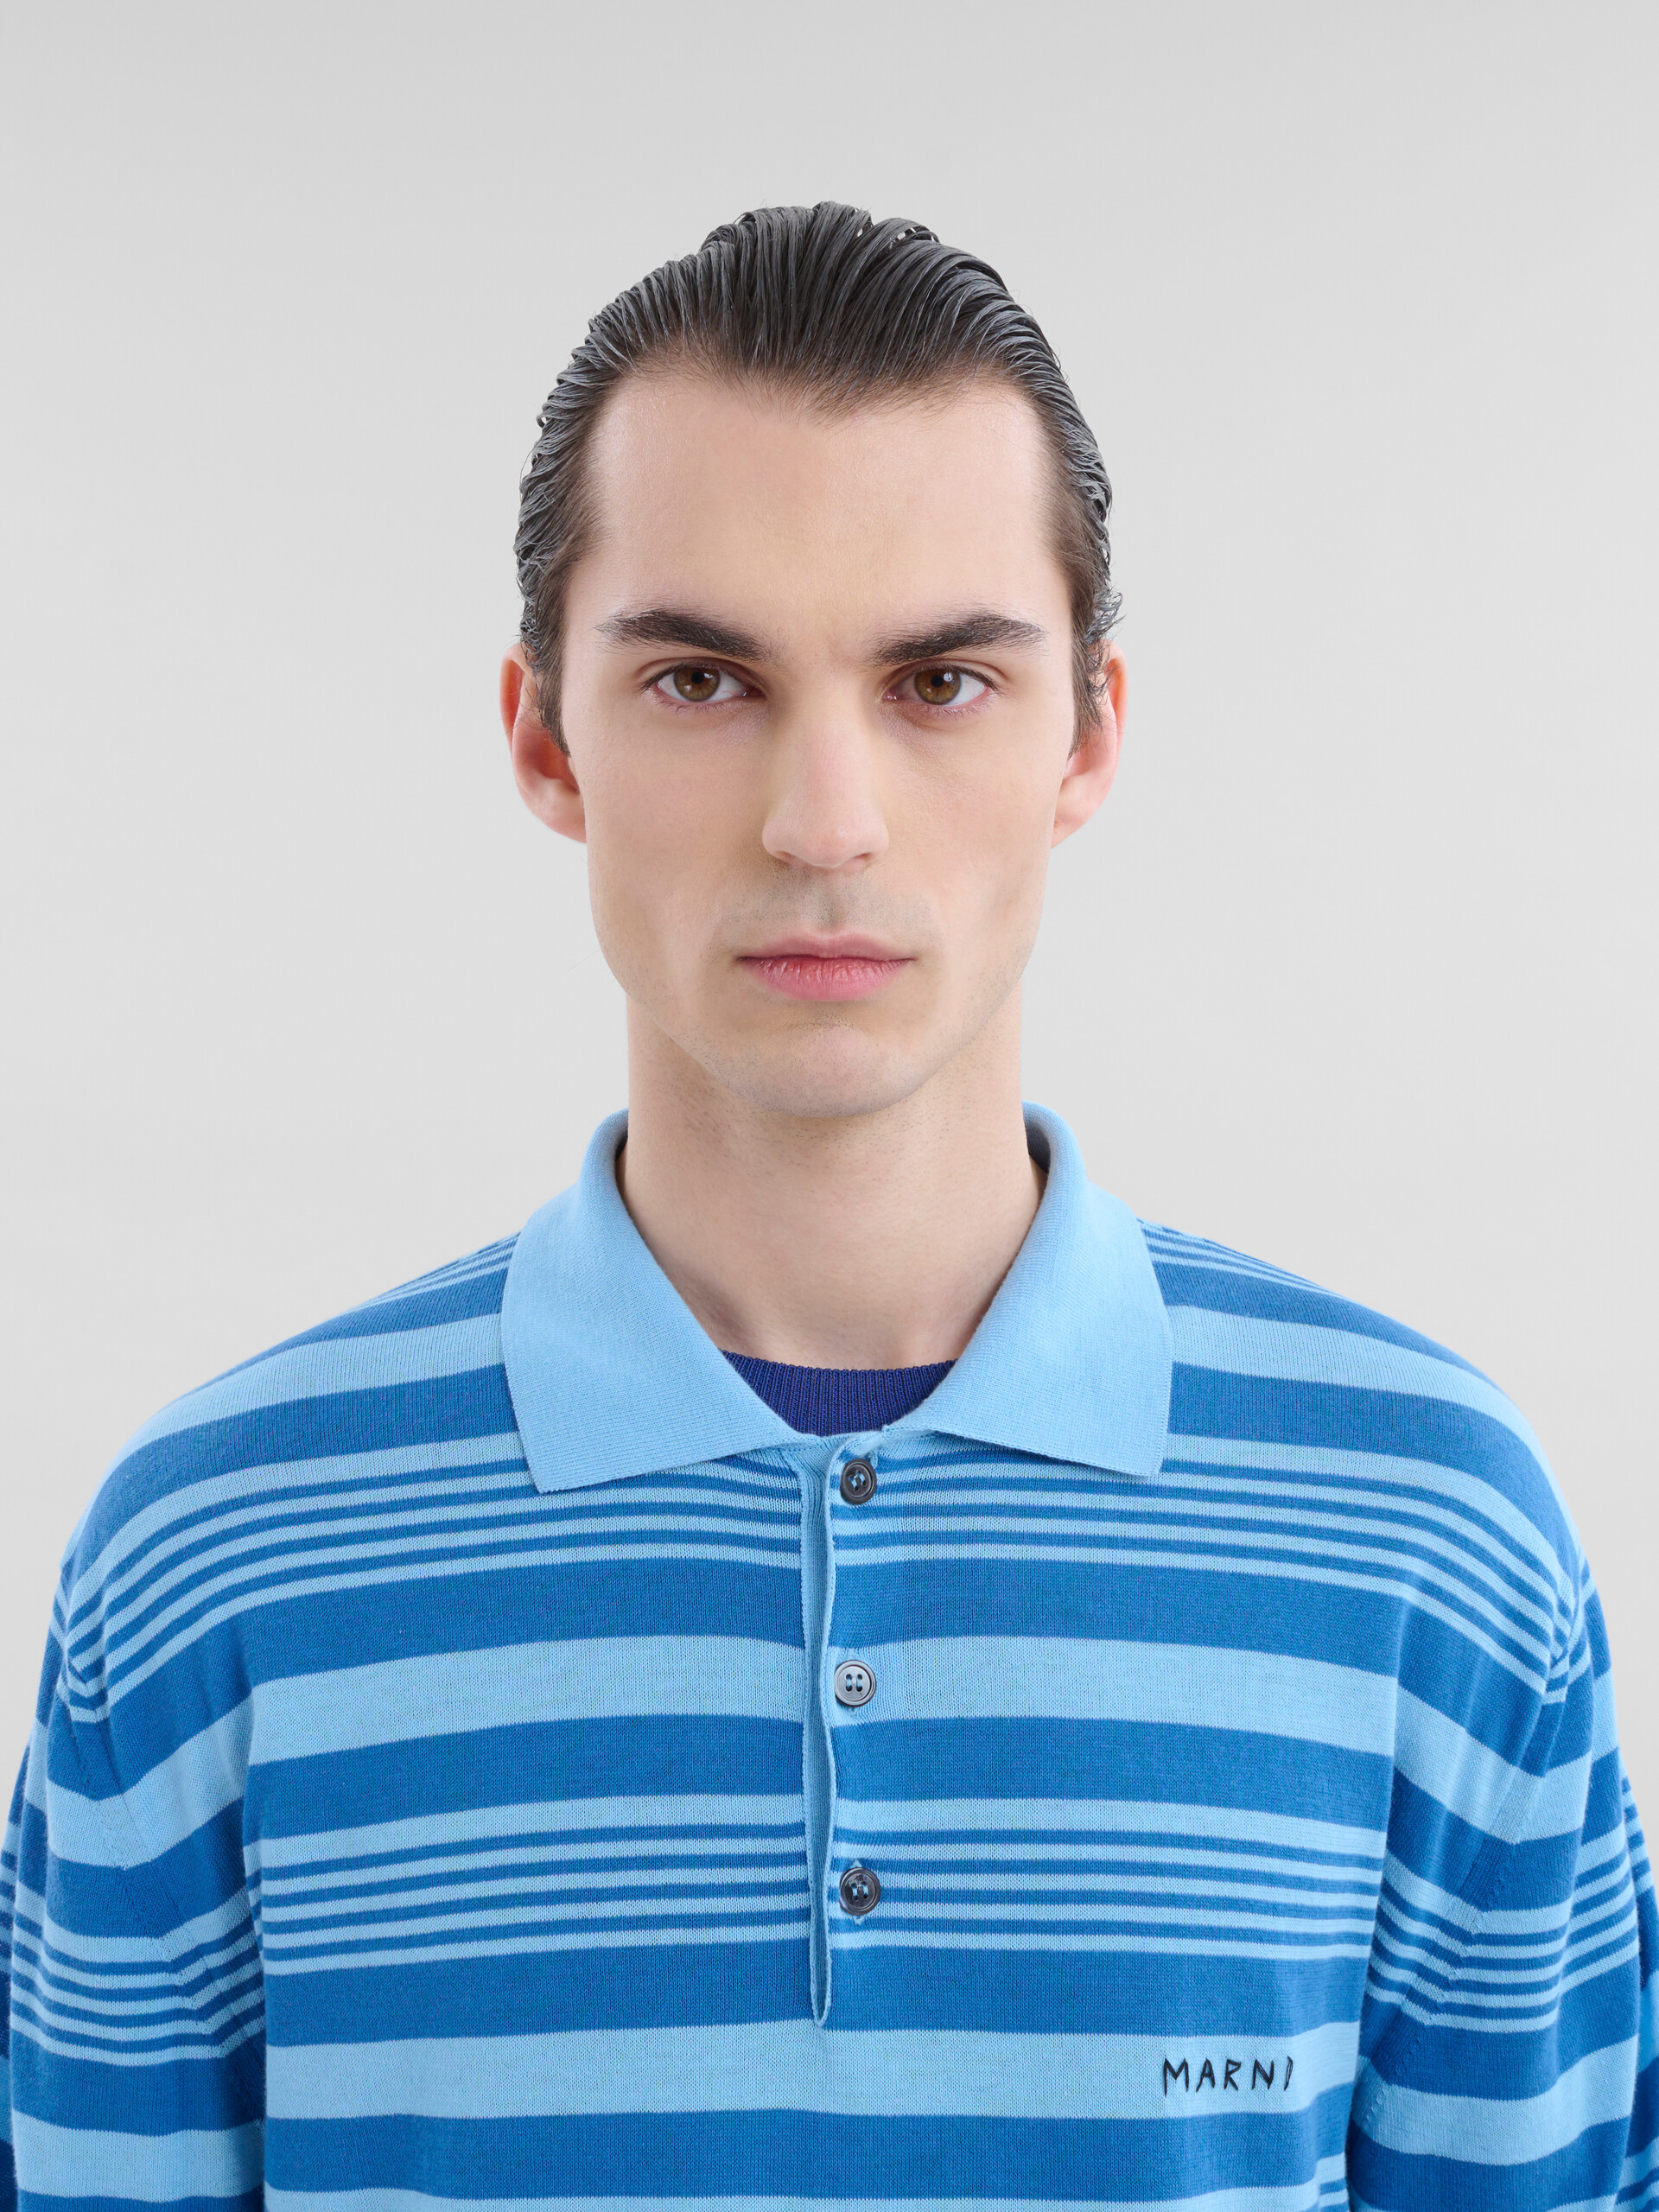 Blau gestreiftes Polohemd aus Baumwolle mit Marni-Flicken - Hemden - Image 4